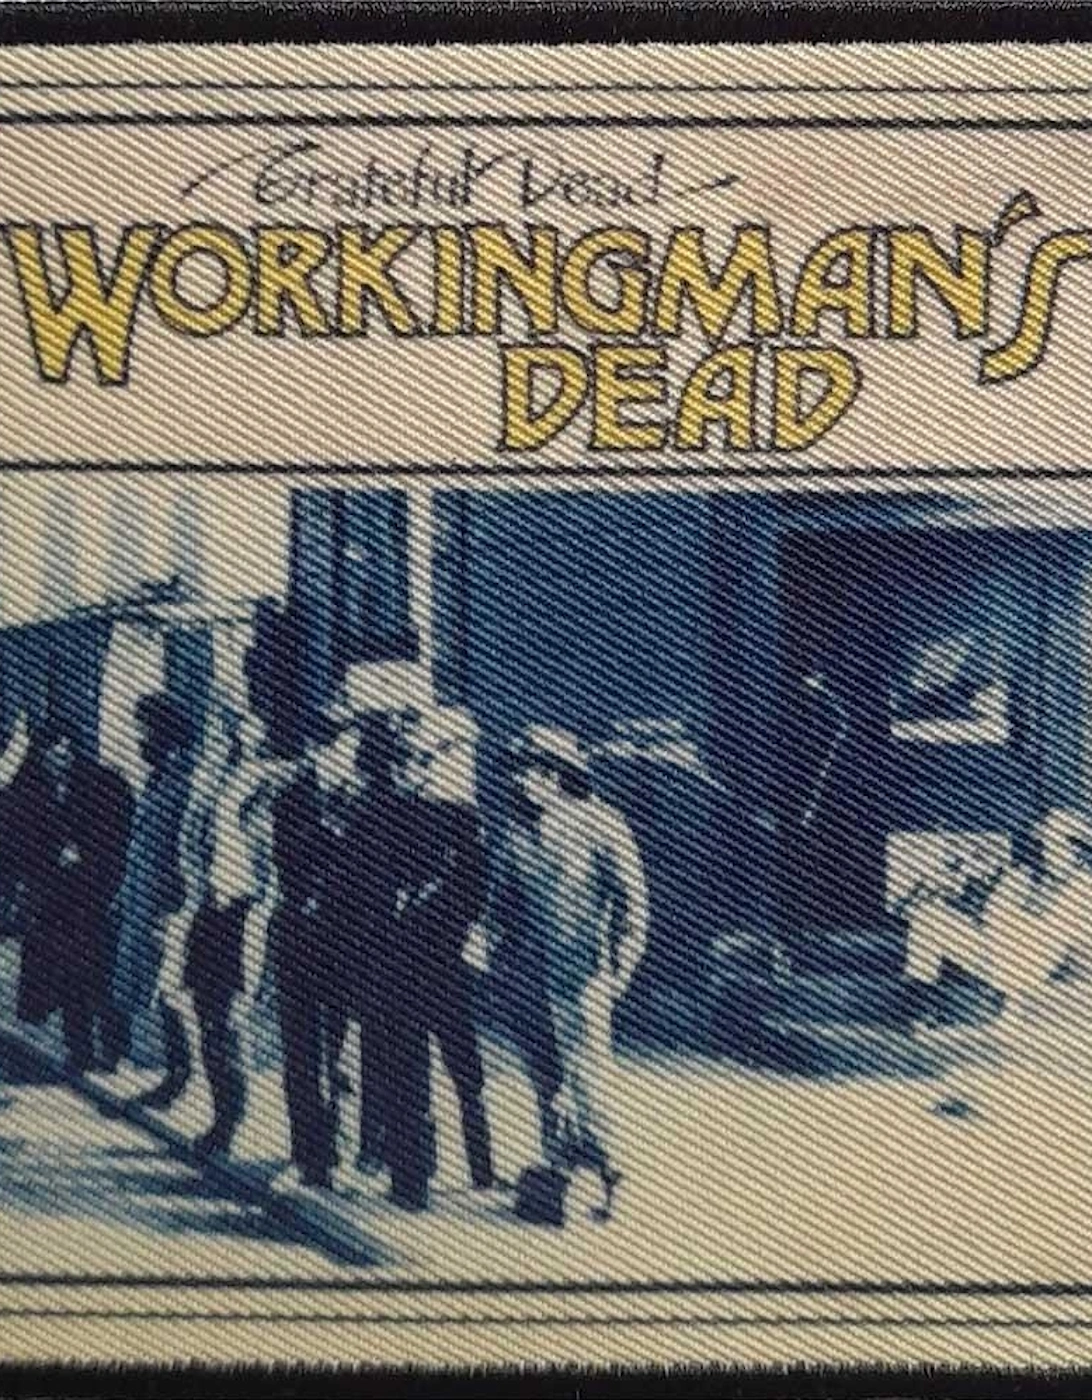 Workingmans Dead Patch, 2 of 1